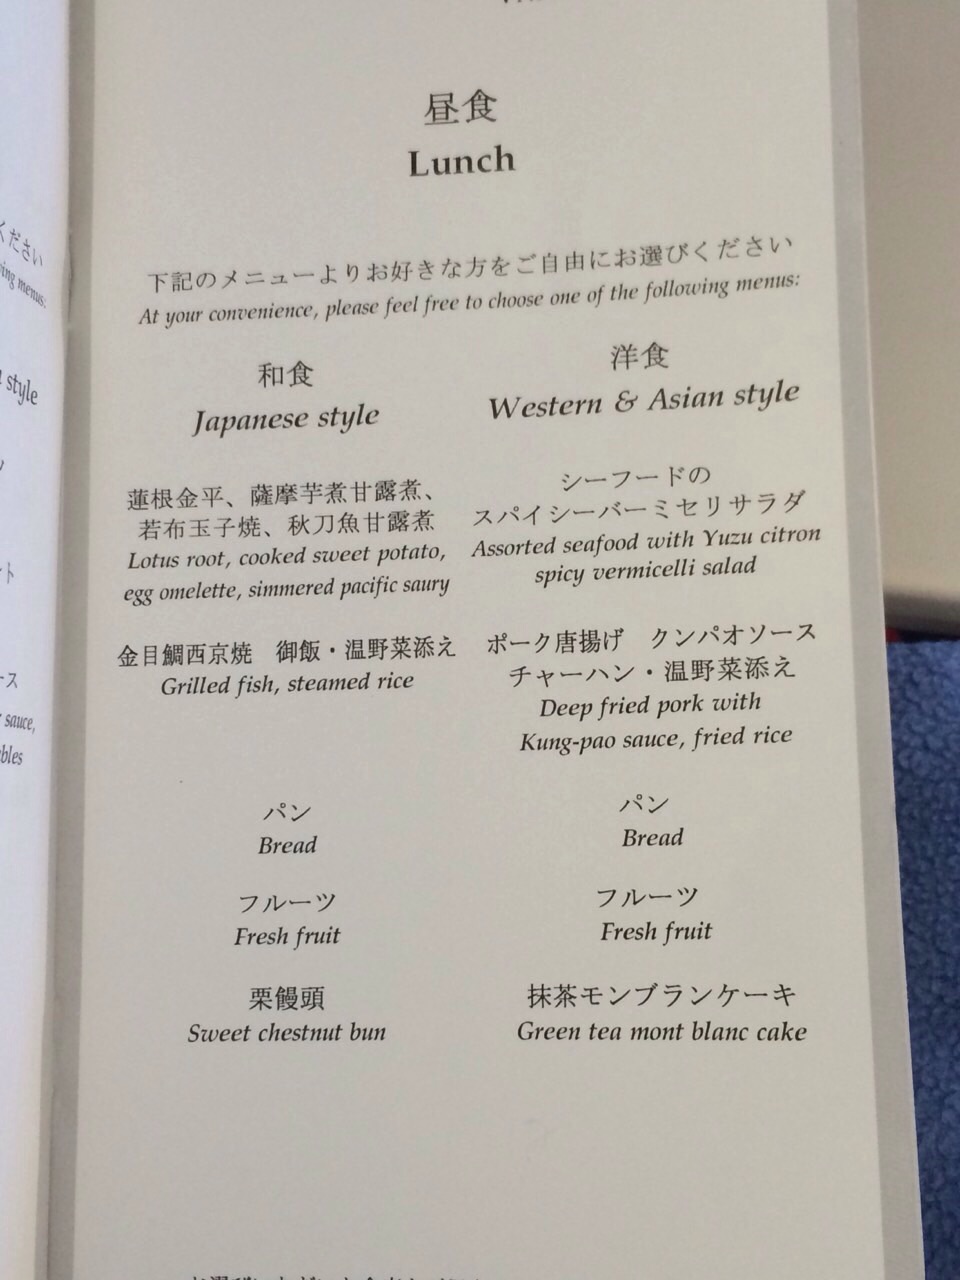 日本語で書かれた昼食メニュー表